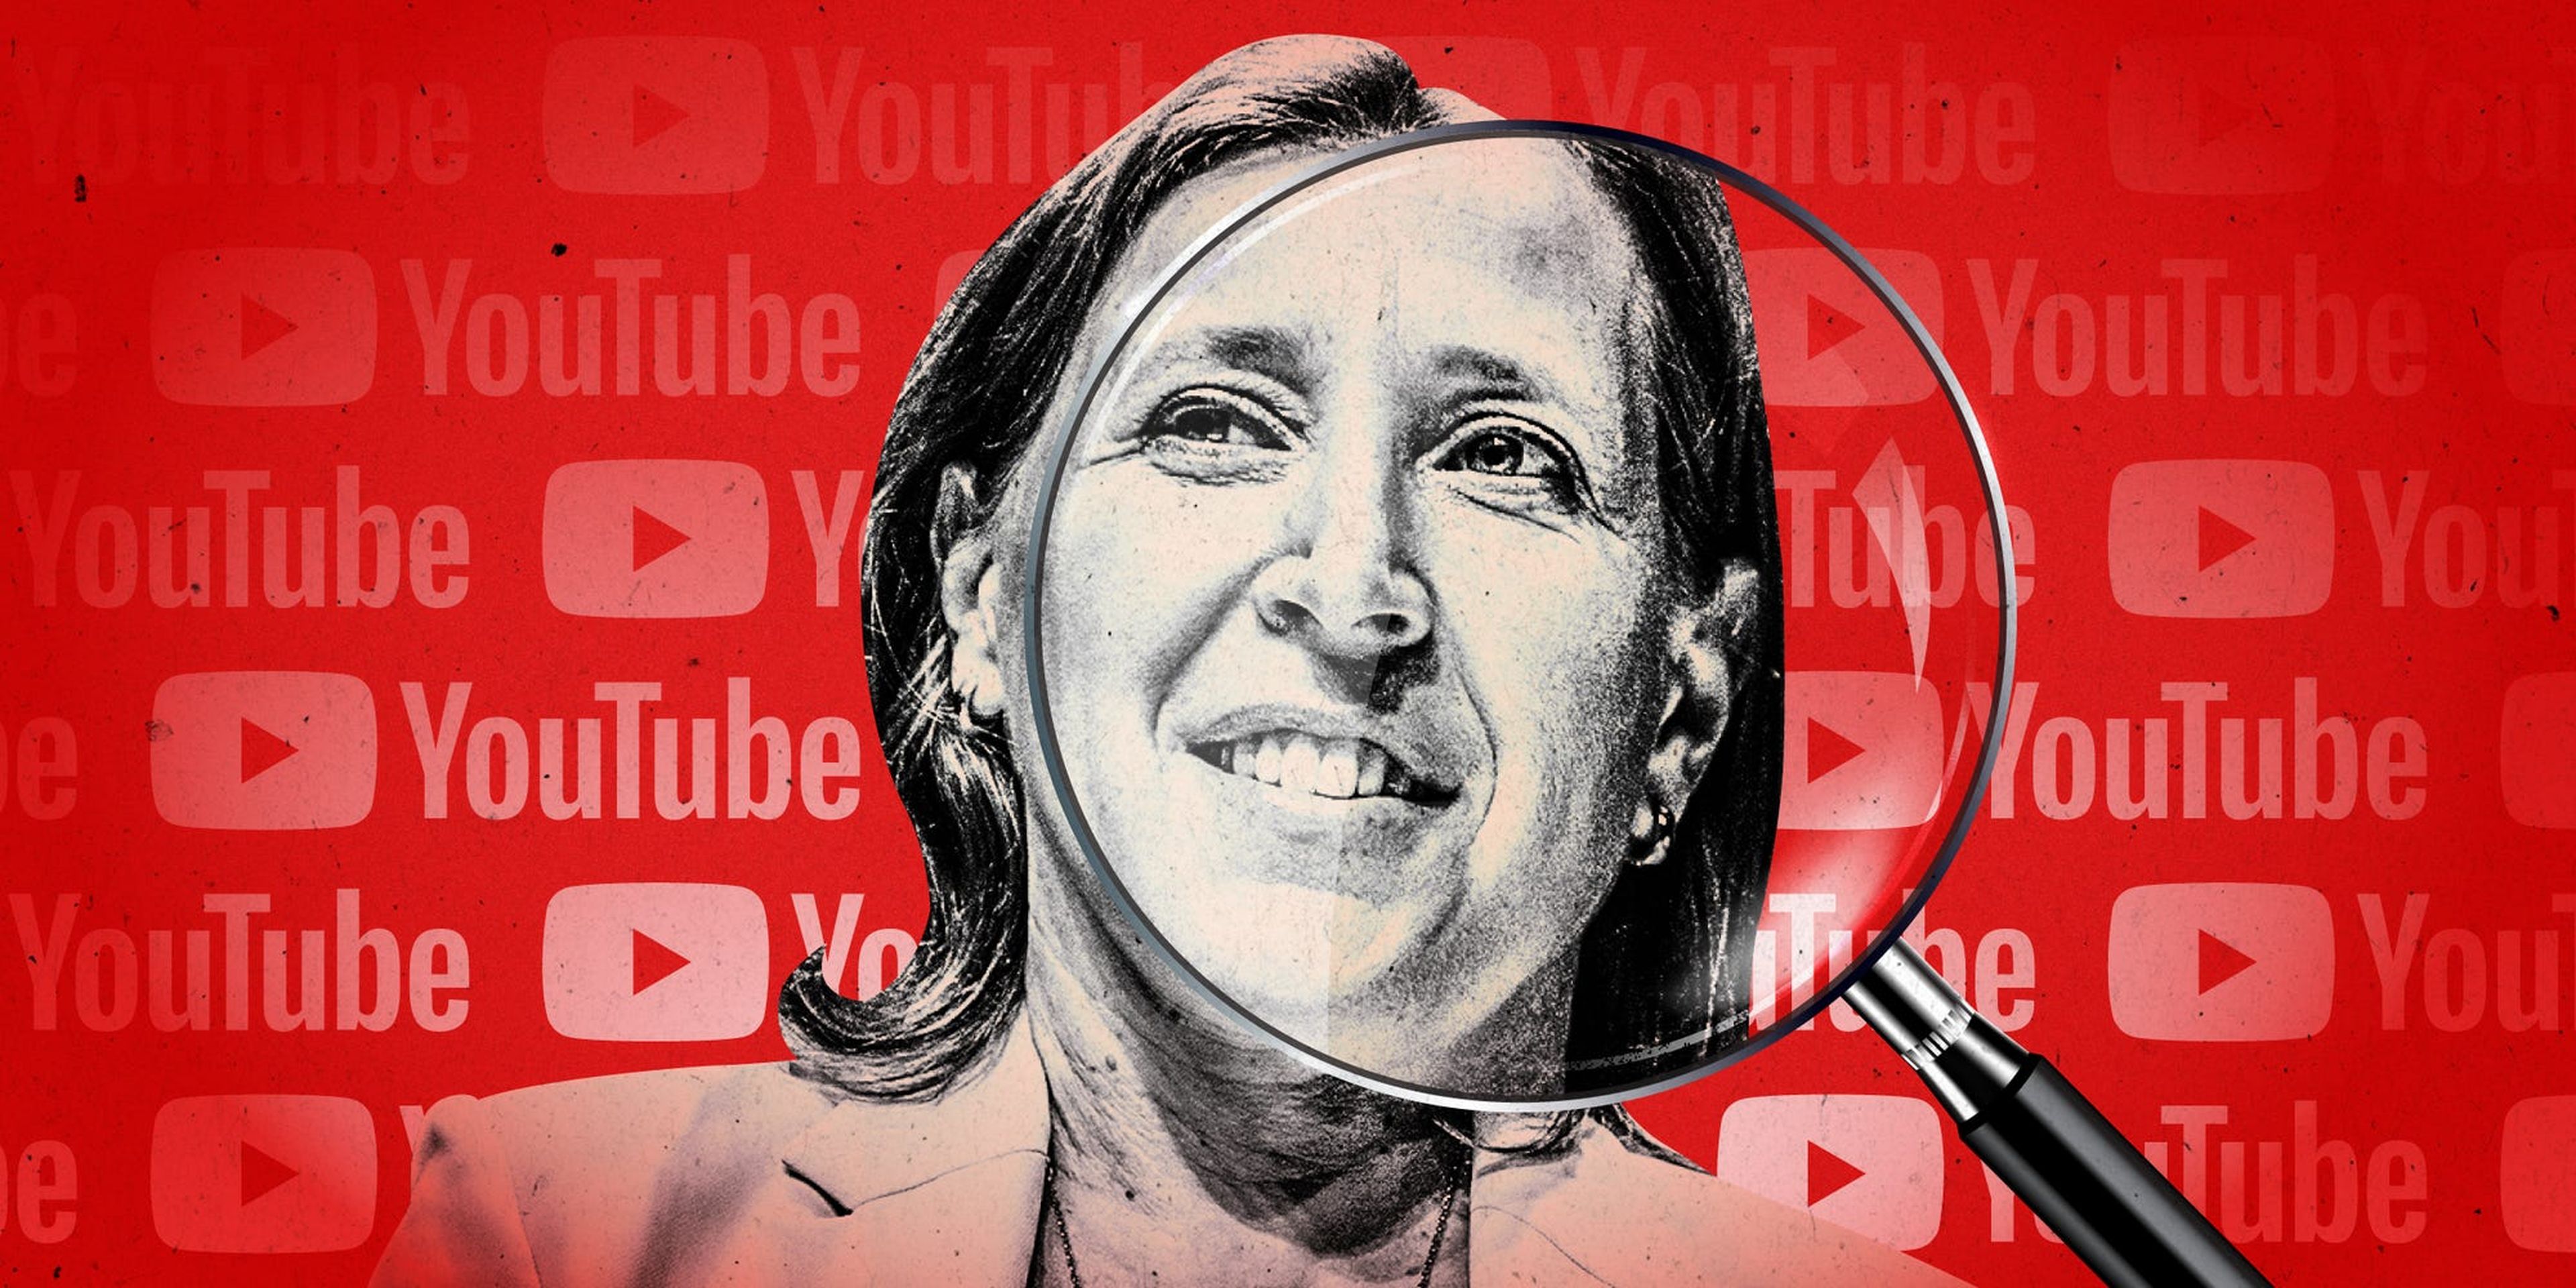 Susan Wojcicki ha pasado los últimos ocho años convirtiendo YouTube en un gigante.